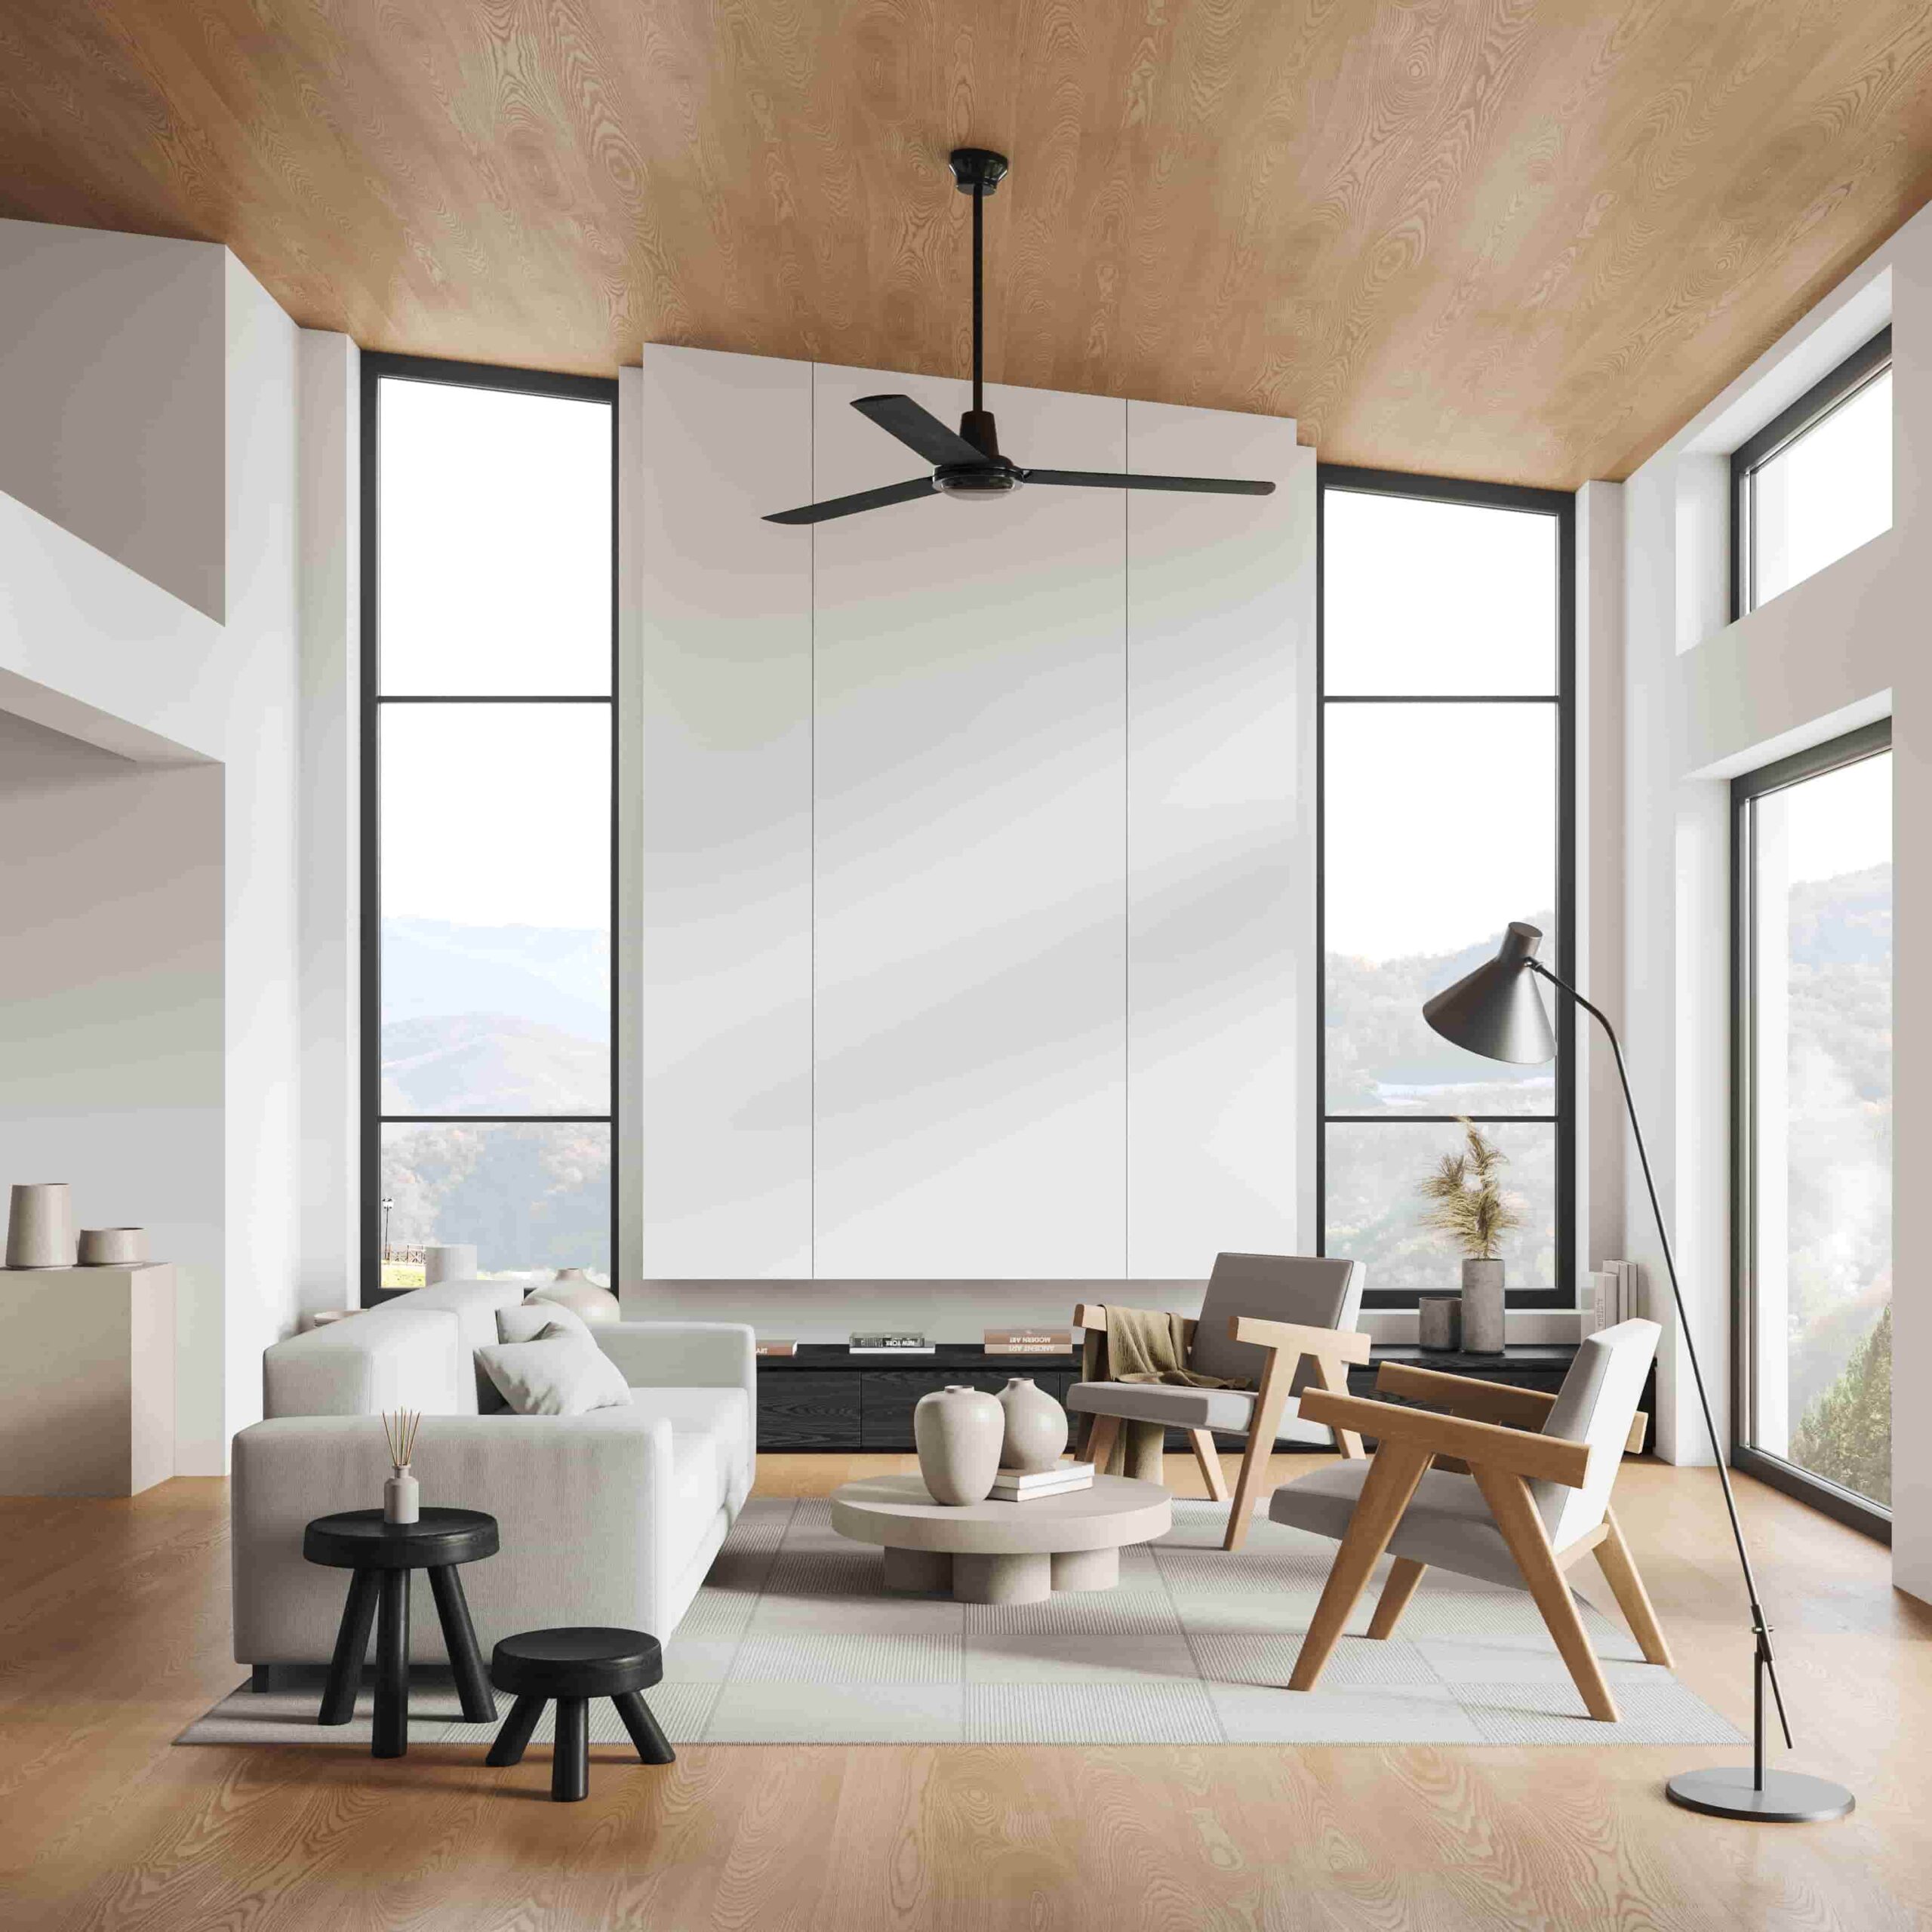 Adopter le minimalisme scandinave pour un intérieur paisible